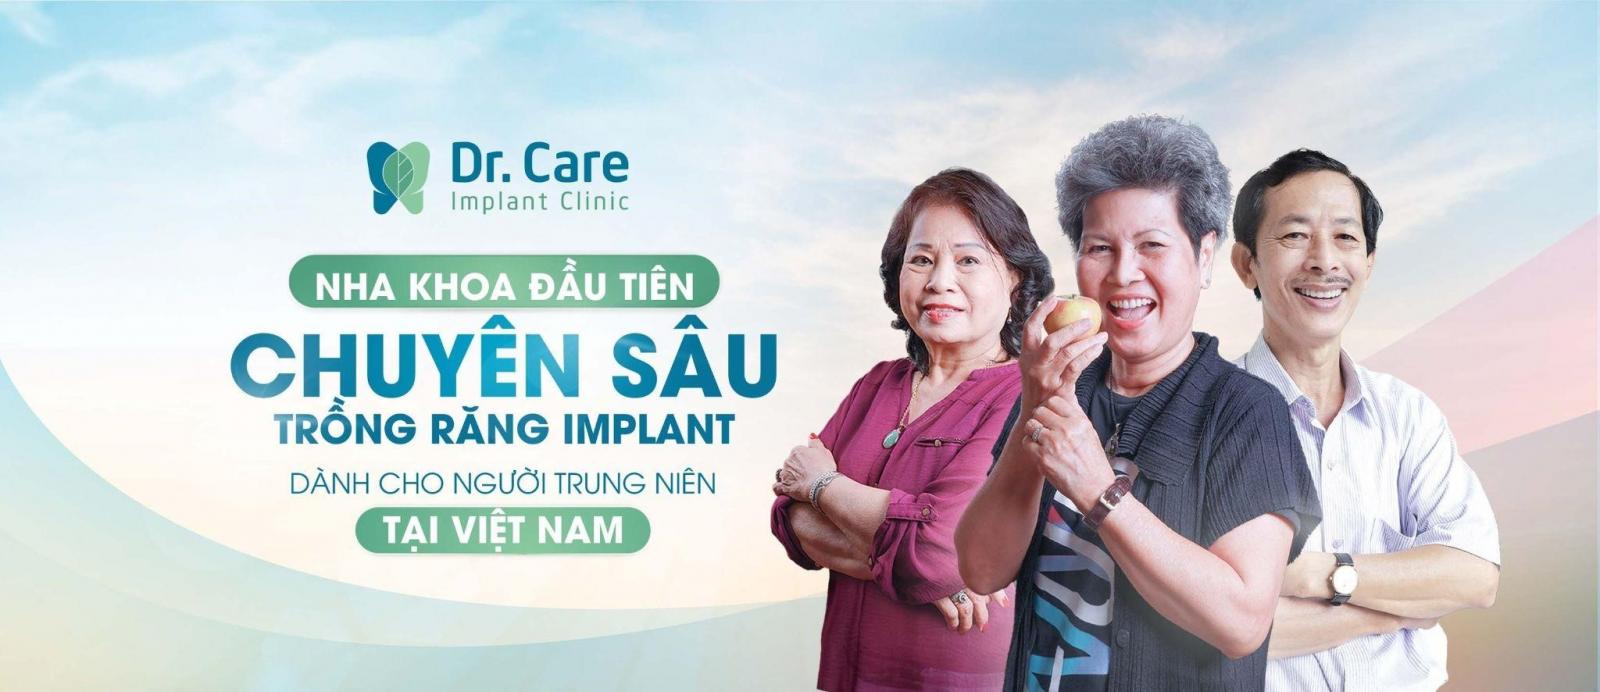 Dr.Care Implant Clinic - Nha khoa đầu tiên chuyên sâu trồng răng Implant dành cho người trung niên tại Việt Nam